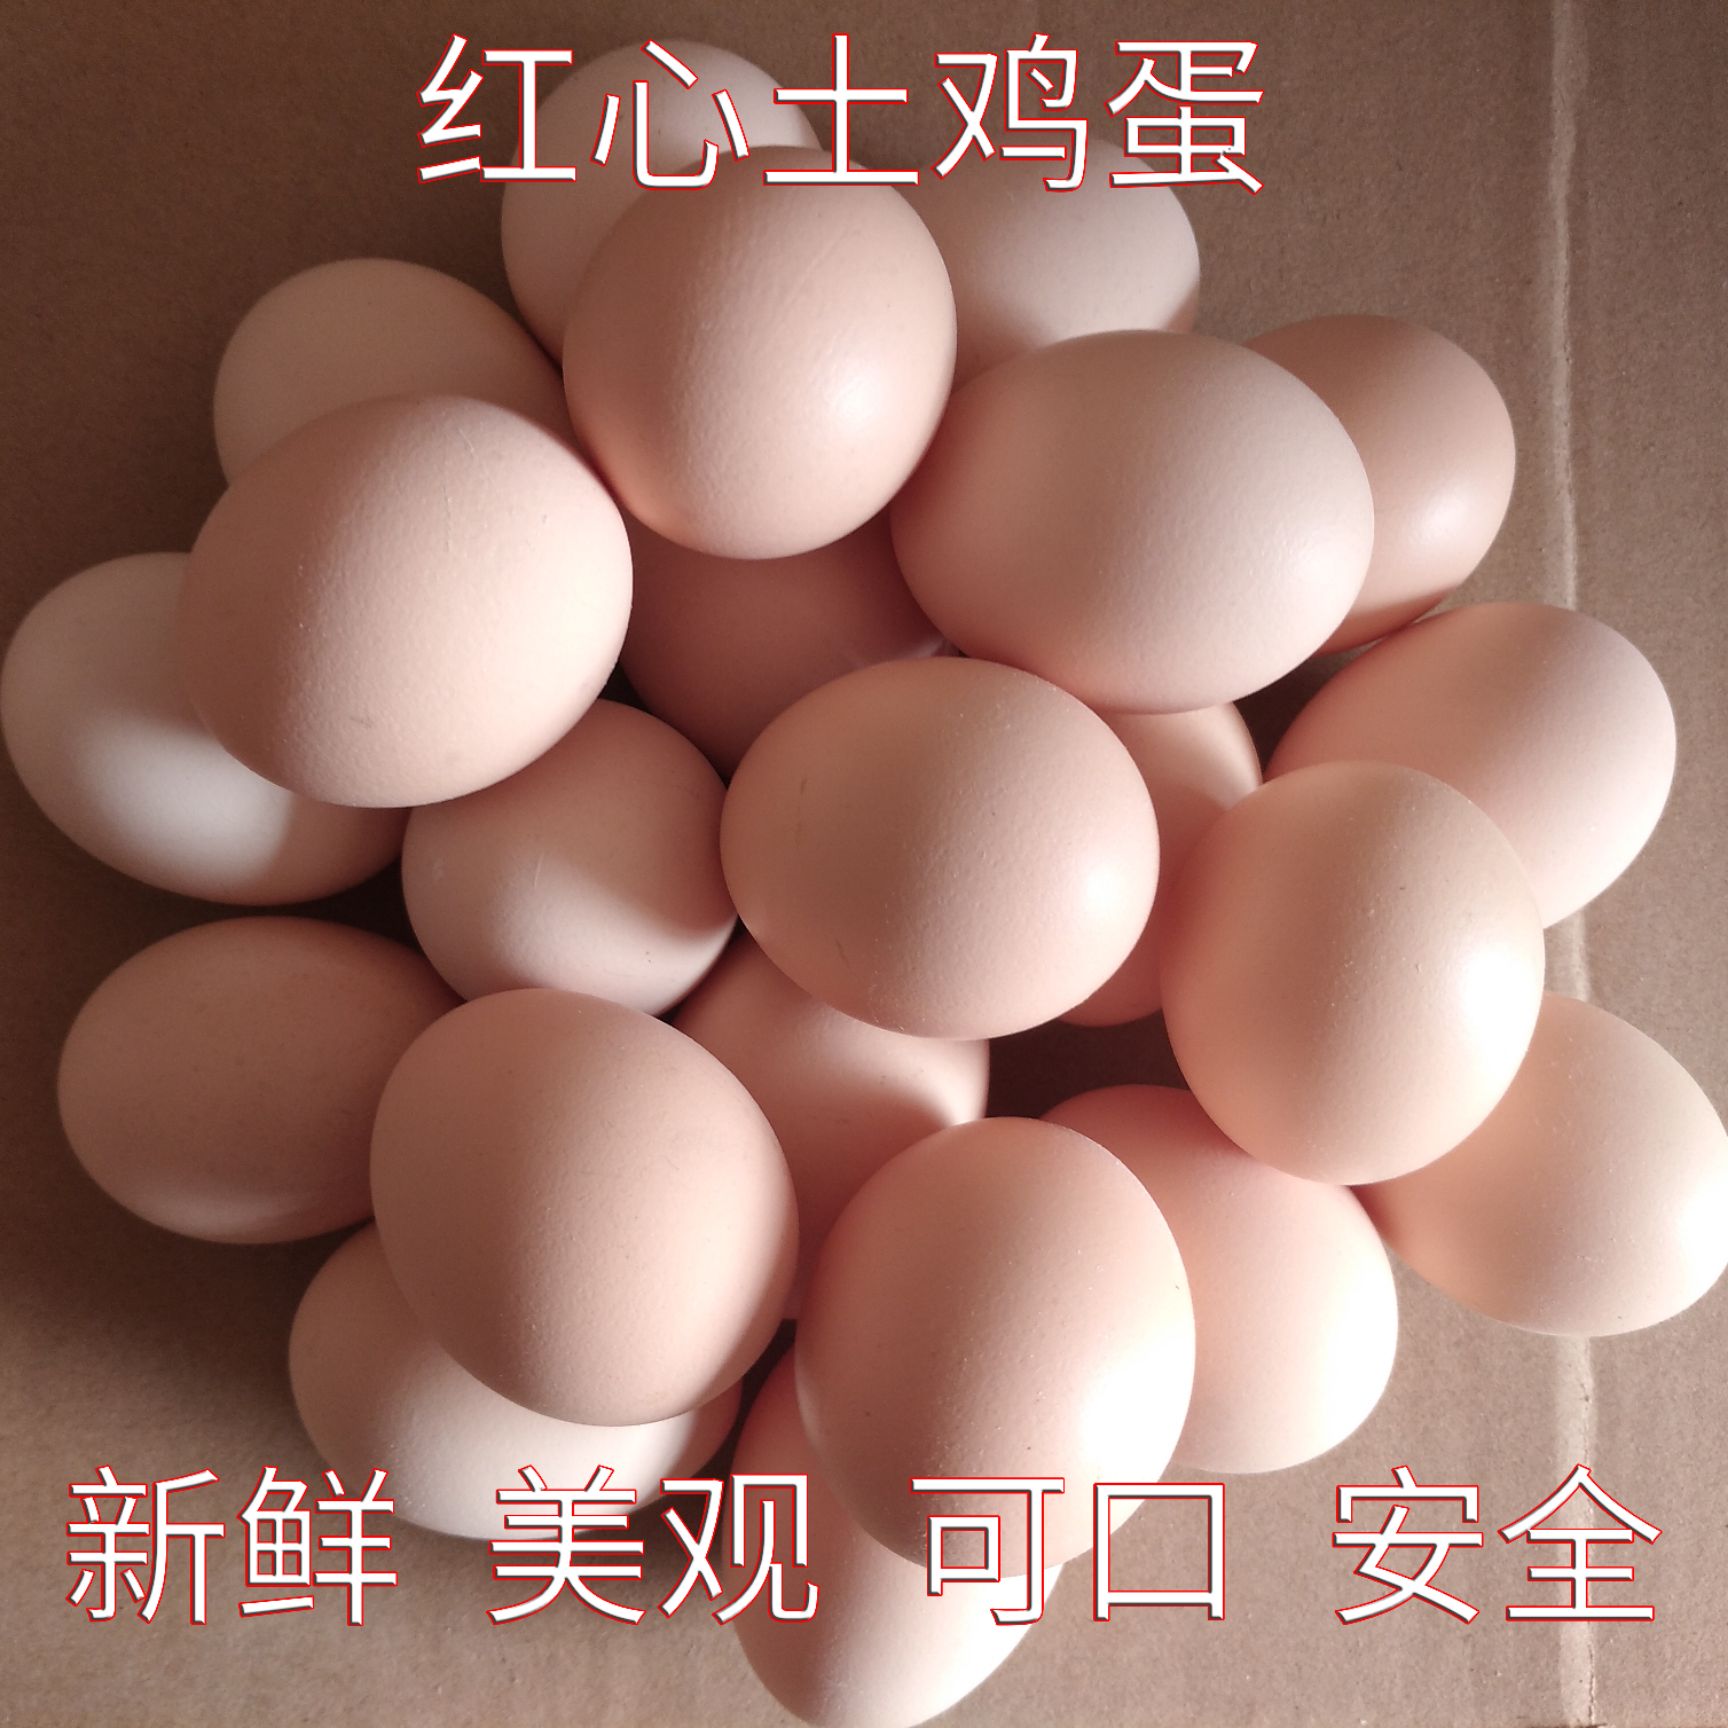 进贤县普通鸡蛋  土鸡蛋粉壳红心乡下自产现产现发新鲜土鸡蛋